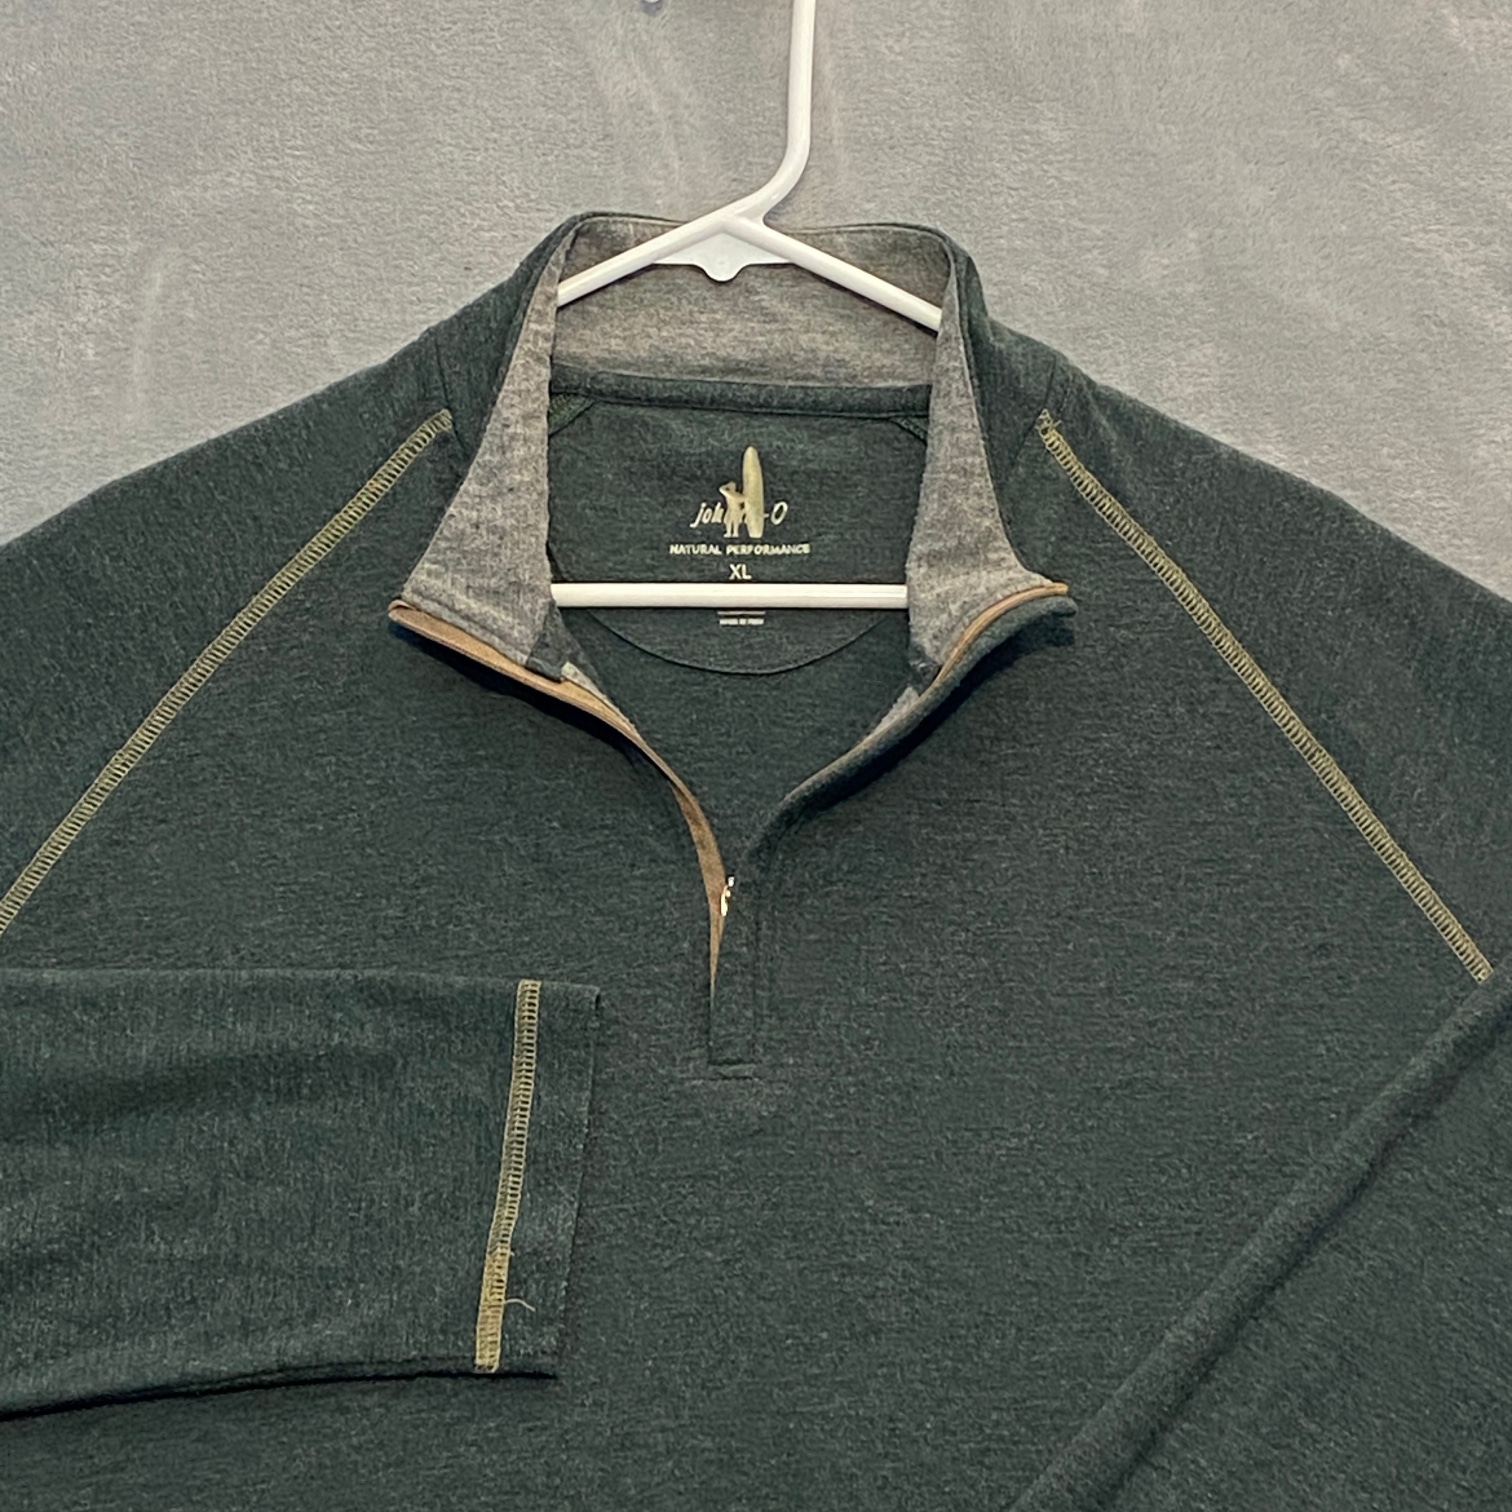 Johnnie-O Sweater Men XL Green Long Sleeve Natural Performance 1/4 Zip Golf Prep